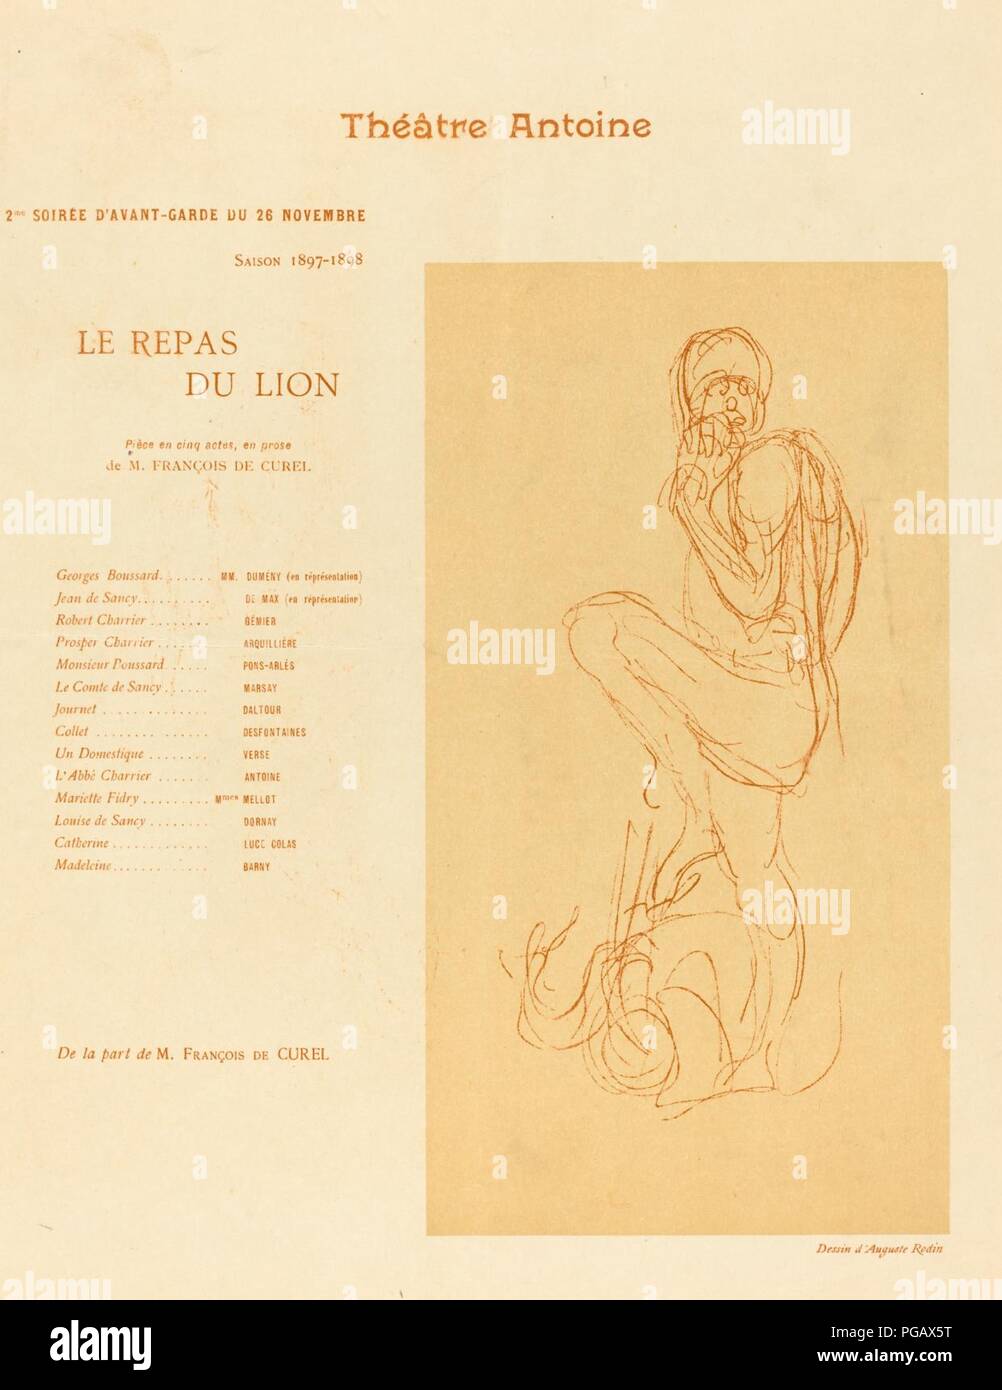 Auguste Rodin - Le Repas du lion. Stock Photo